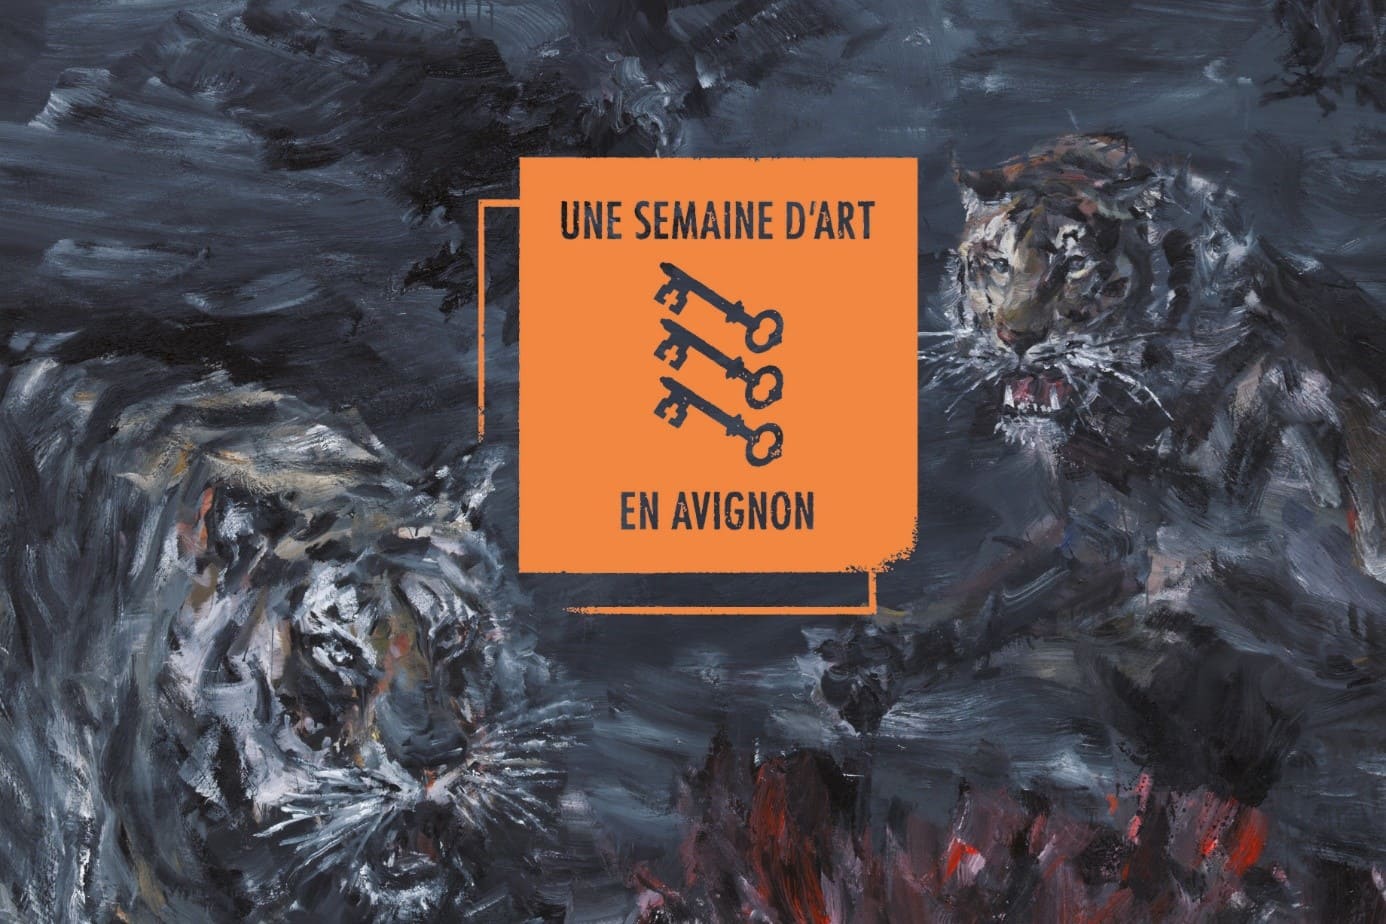 « Une semaine d’Art en Avignon » with #DIESE